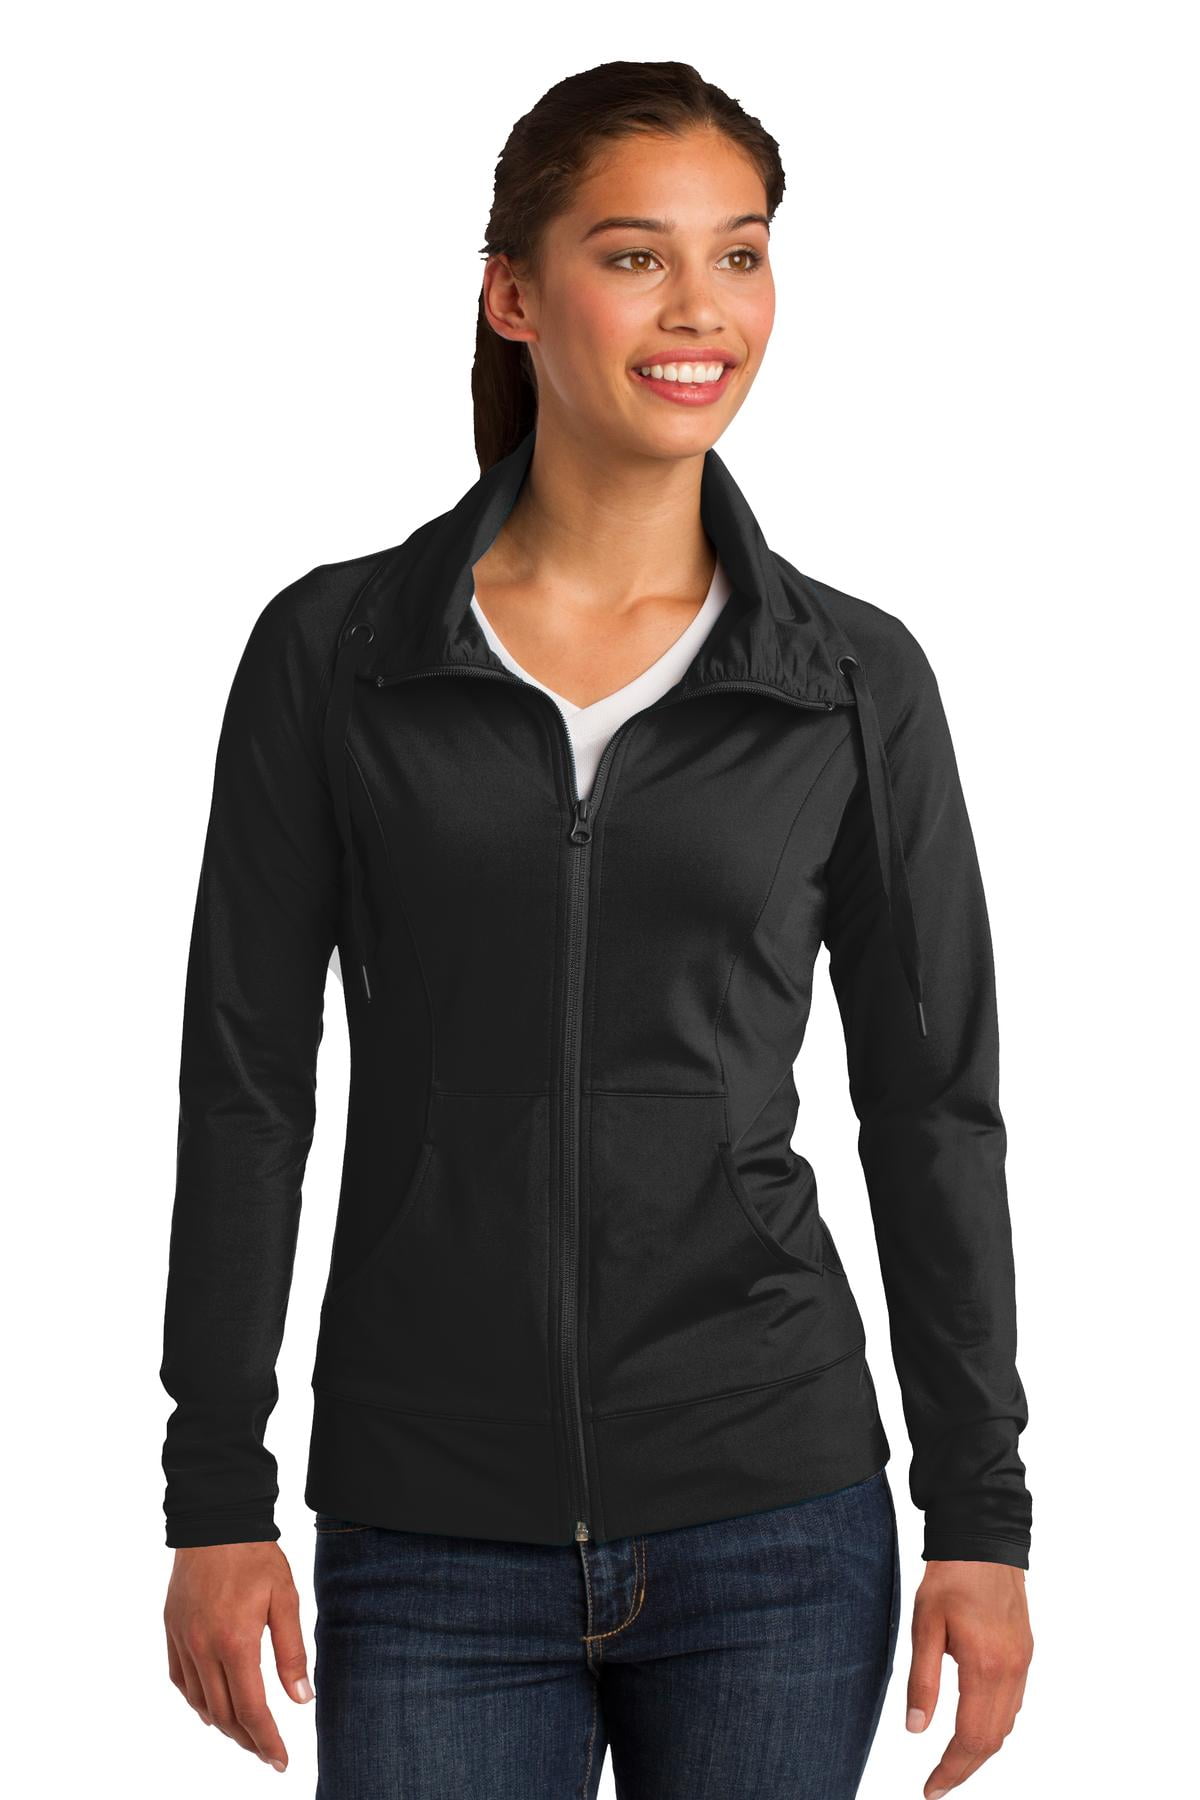 Black LAST ONES Ladies Zip Jacket Hoodie Activewear Sports Loungewear 0158 